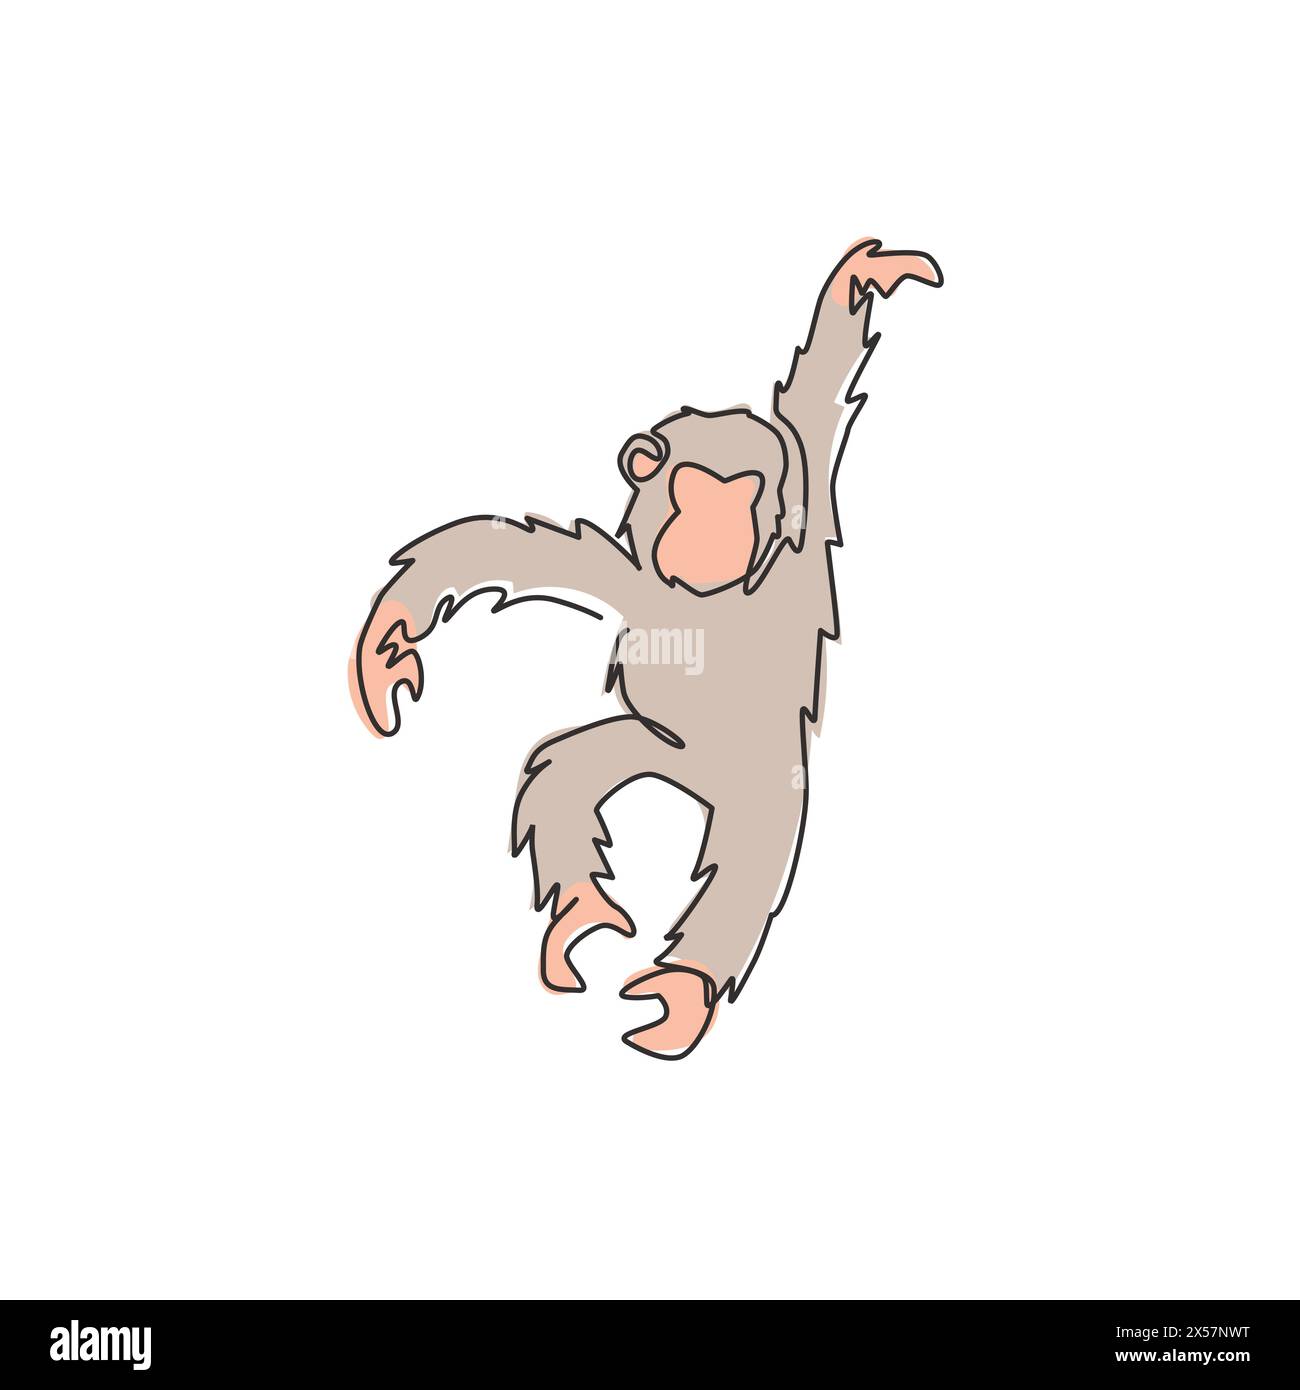 Disegno a linea singola continua di uno scimpanzé da salto per l'identità del logo nazionale dello zoo. Adorabile mascotte animale primate per icona di spettacolo circense. Illustrazione Vettoriale